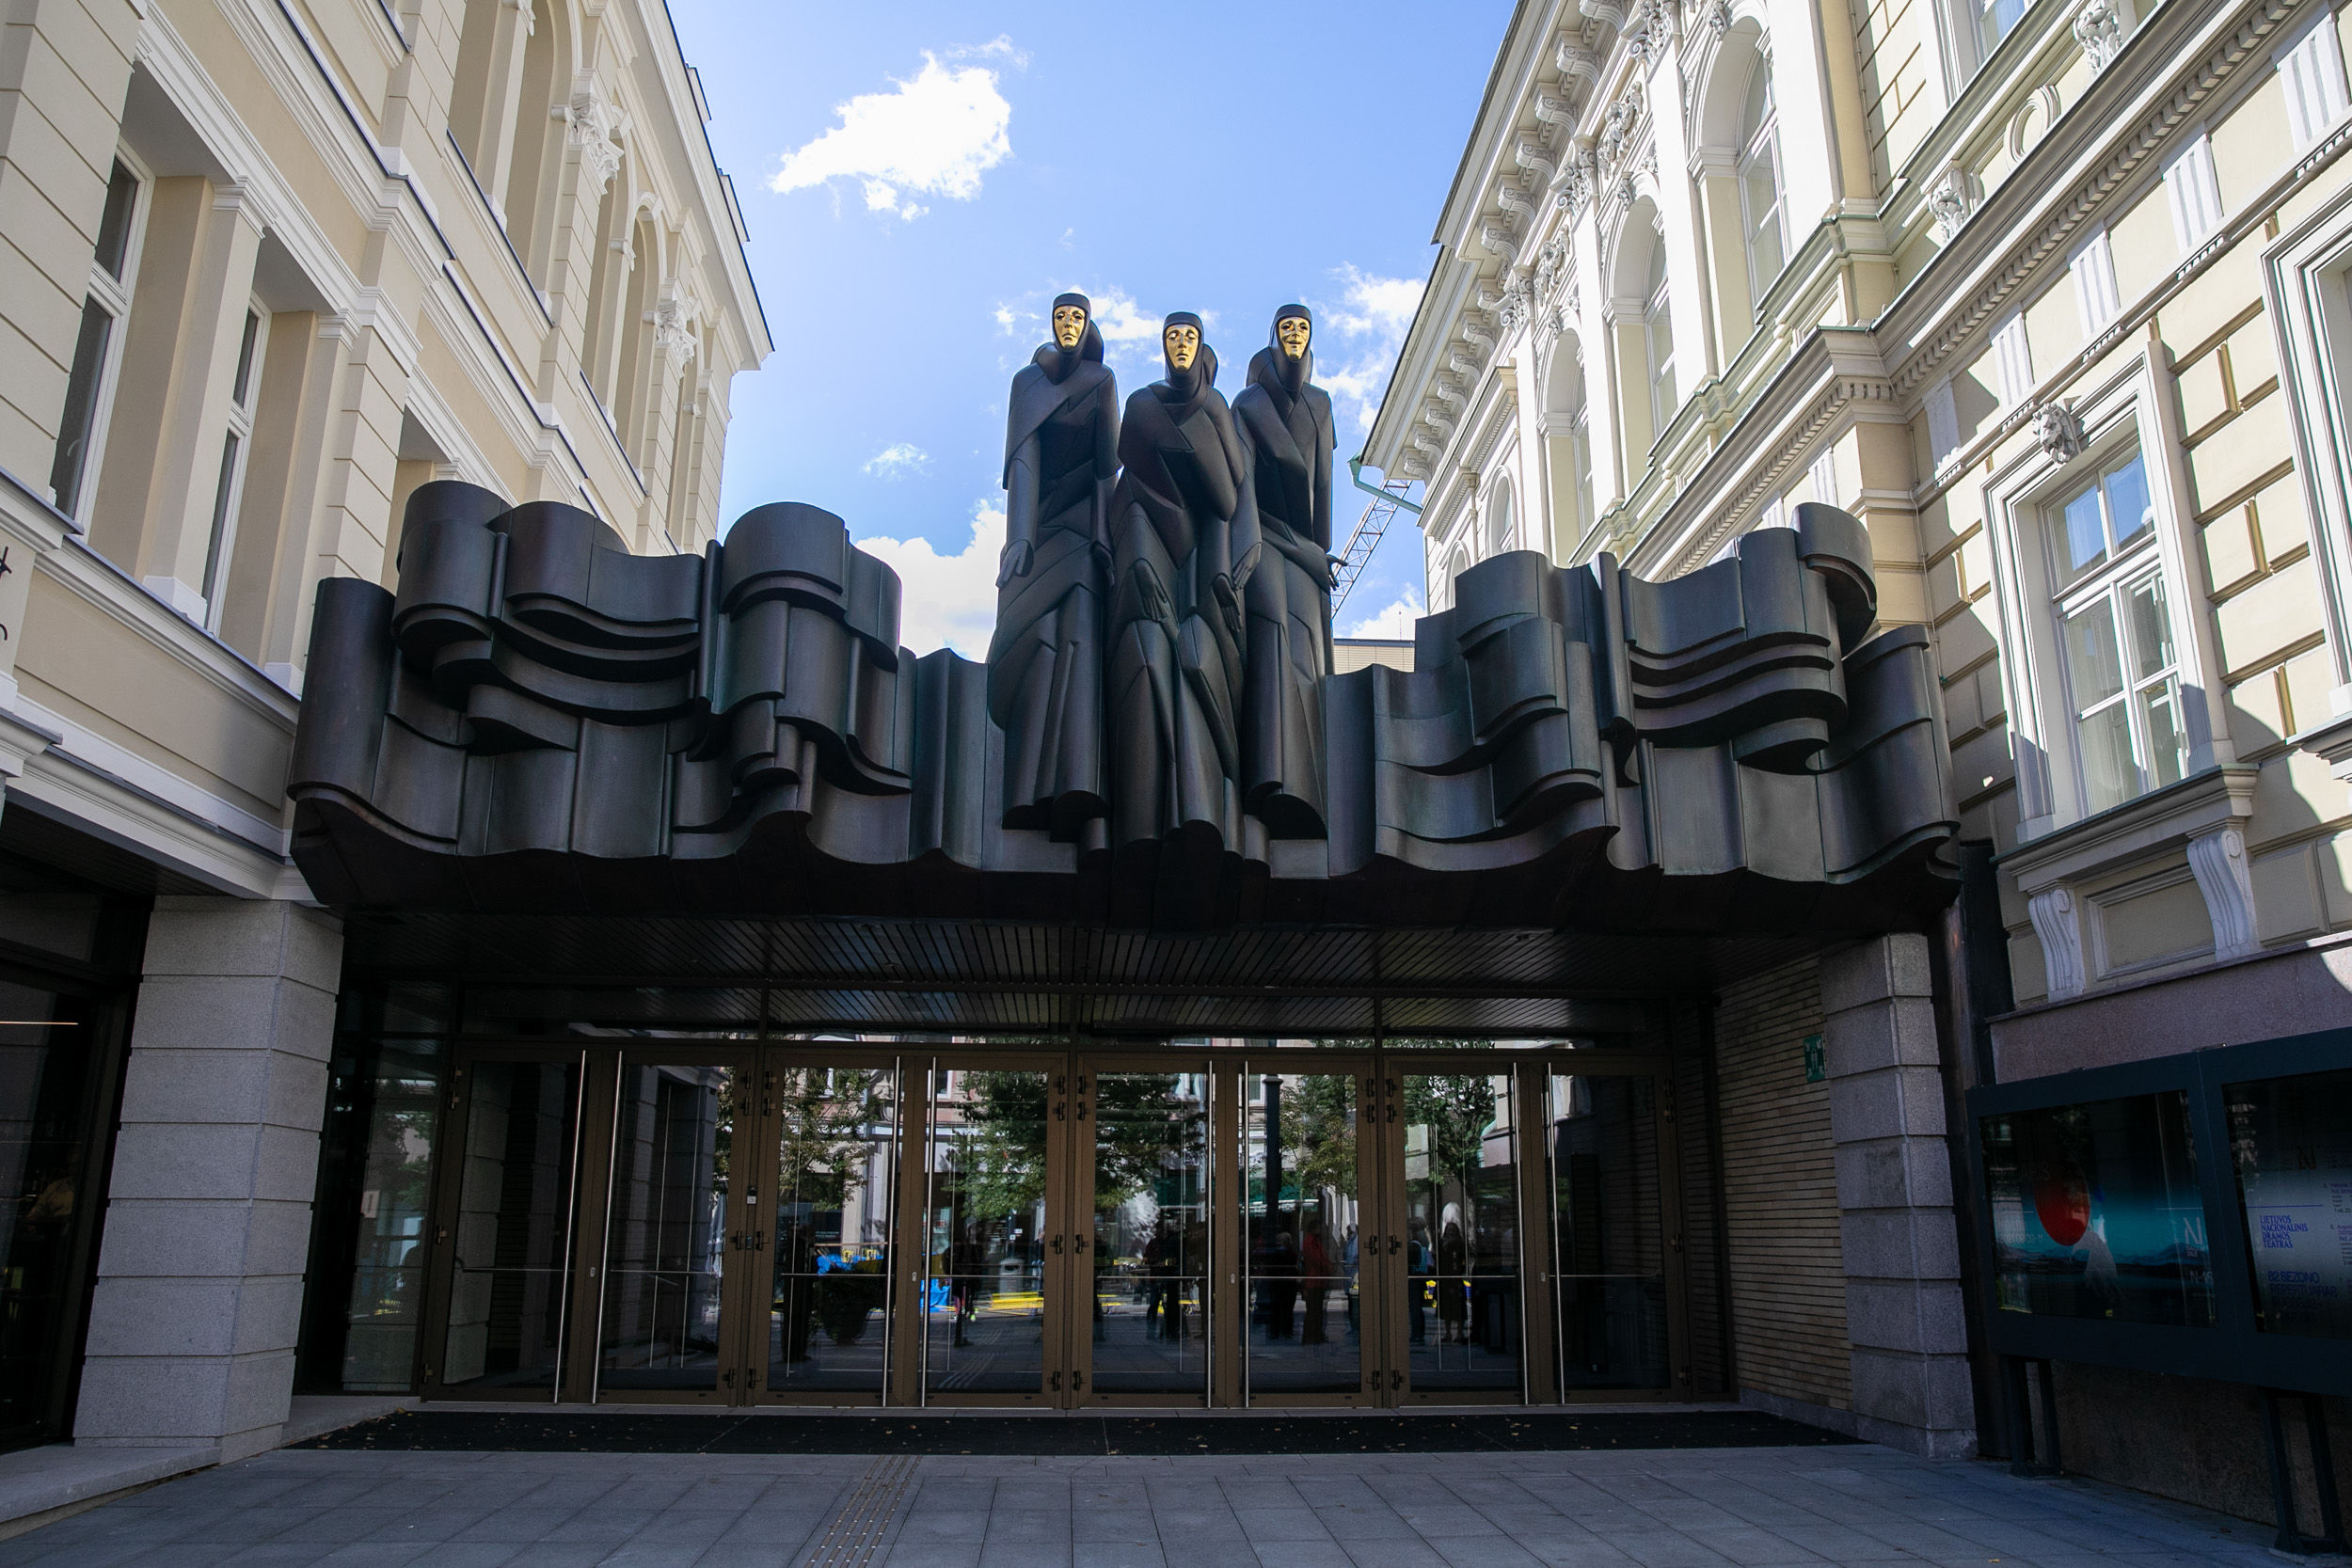 2021-09-02, Lietuvos nacionalinis dramos teatras atvėrė duris po rekonstrukcijos. 2021 m. Rugsėjo 02 d.